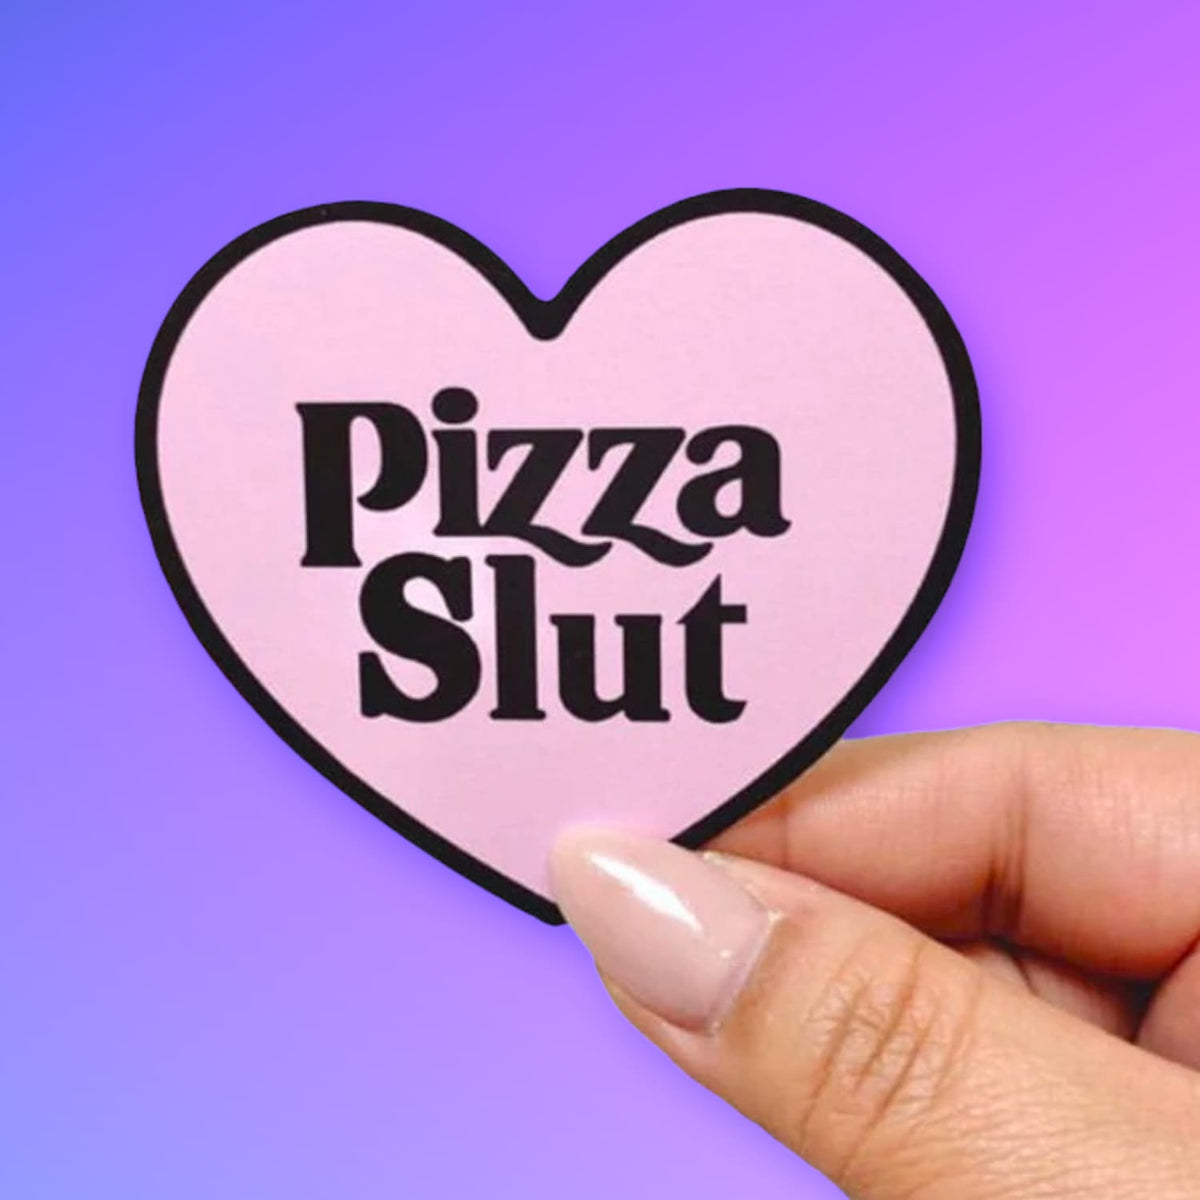 Pizza Slut Heart Sticker Decorative Sticker - Funny Gift -